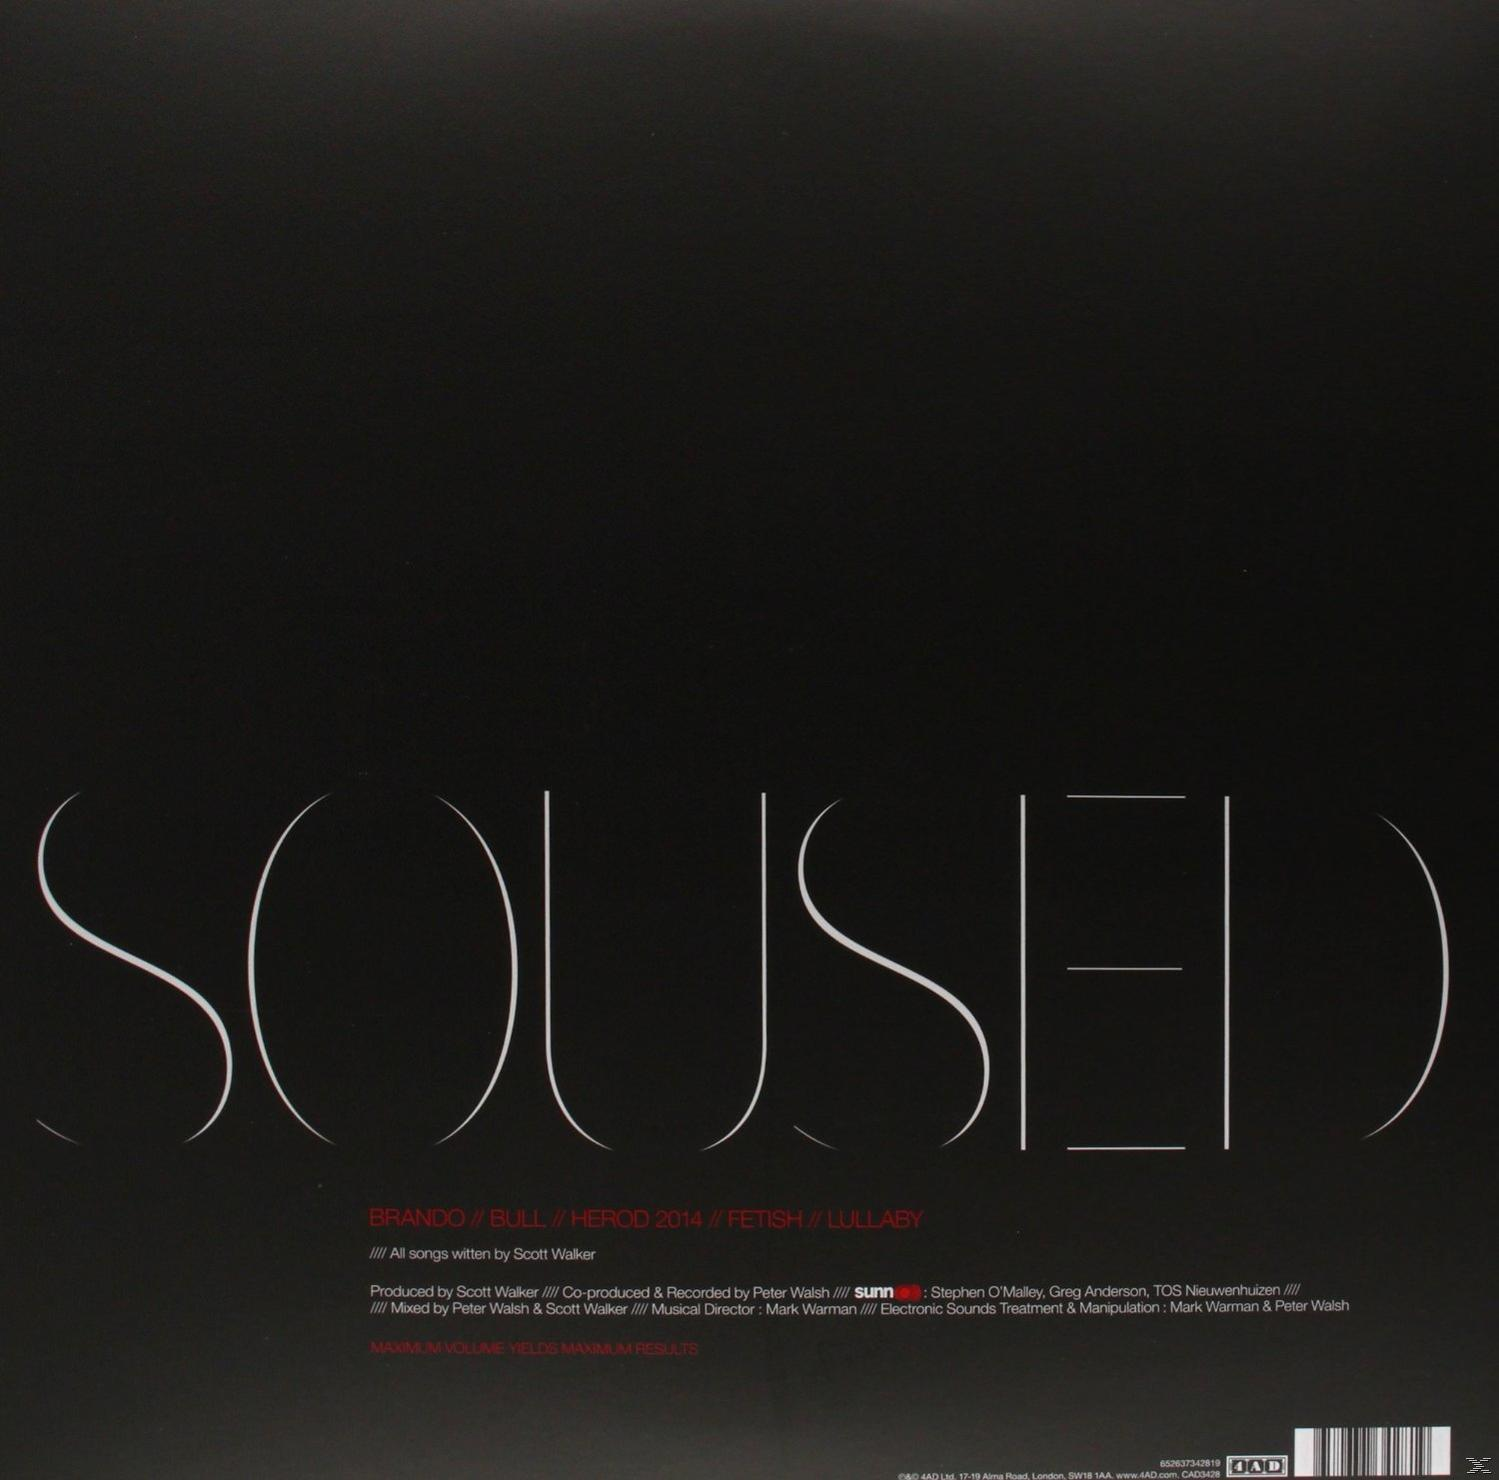 - Walker O))) Scott+sunn (Vinyl) - Soused